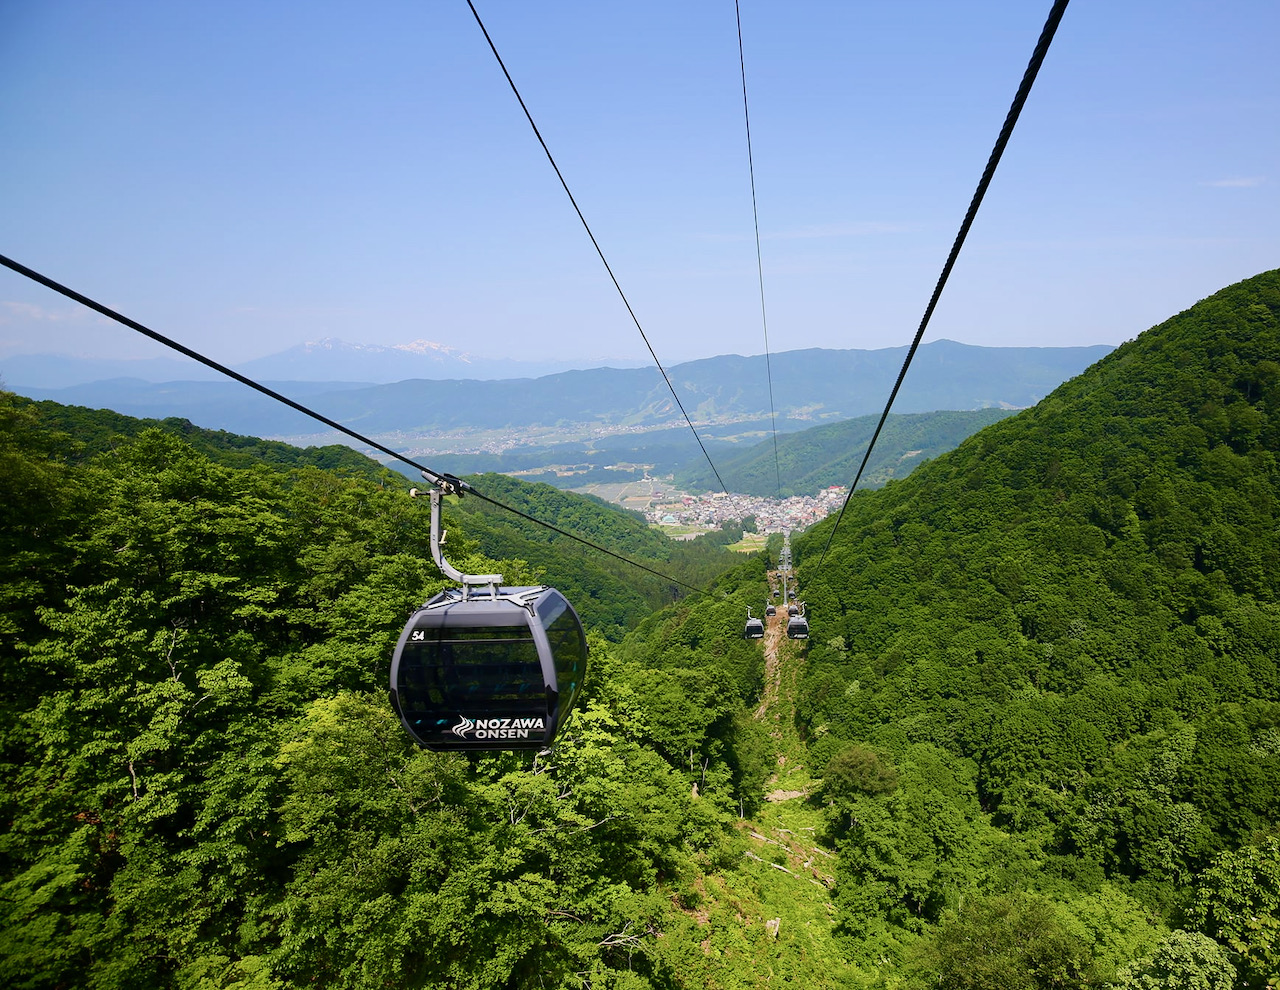 Nozawa Gondola Open Summer 